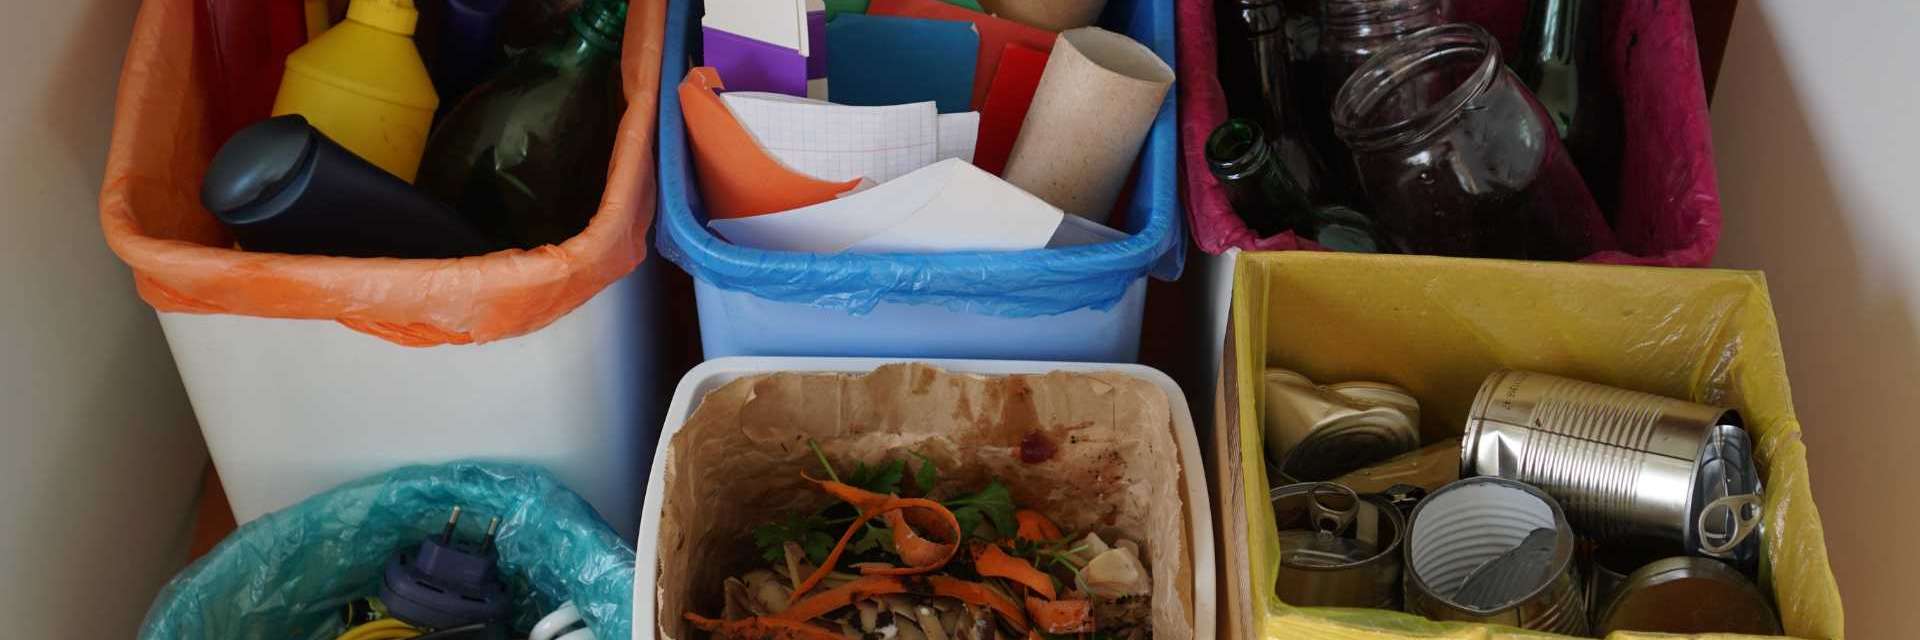 A imagem mostra um conjunto de cinco lixeiras coloridas para a separação de recicláveis: plásticos em uma lixeira com saco laranja, papéis em azul, vidros em rosa, compostos orgânicos em um recipiente branco e metais em um saco amarelo.